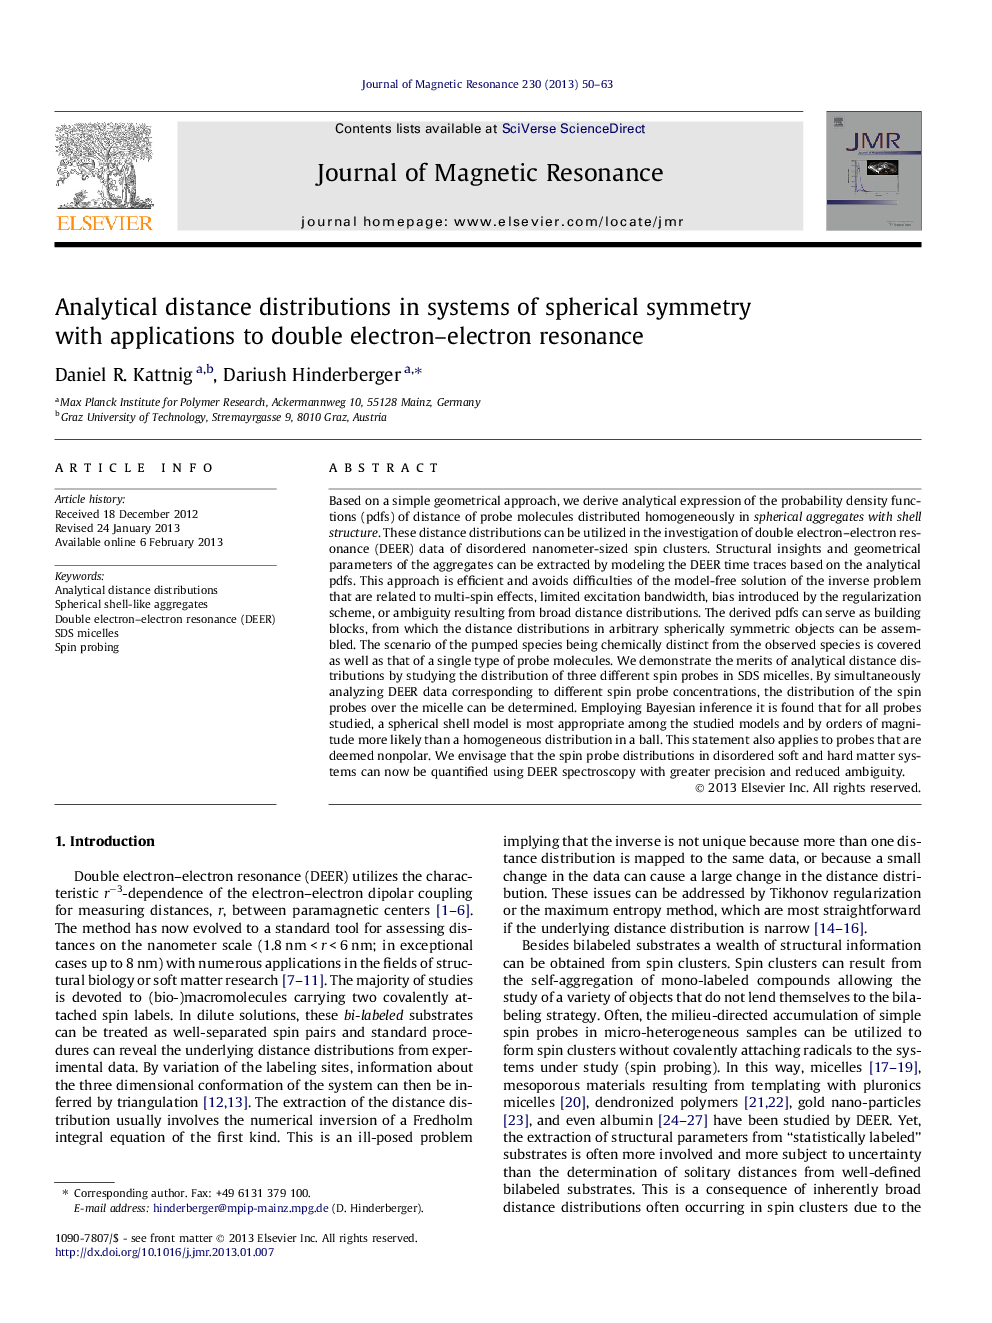 توزیع فاصله های تحلیلی در سیستم های تقارن کروی با برنامه های کاربردی به رزونانس الکترون دو 